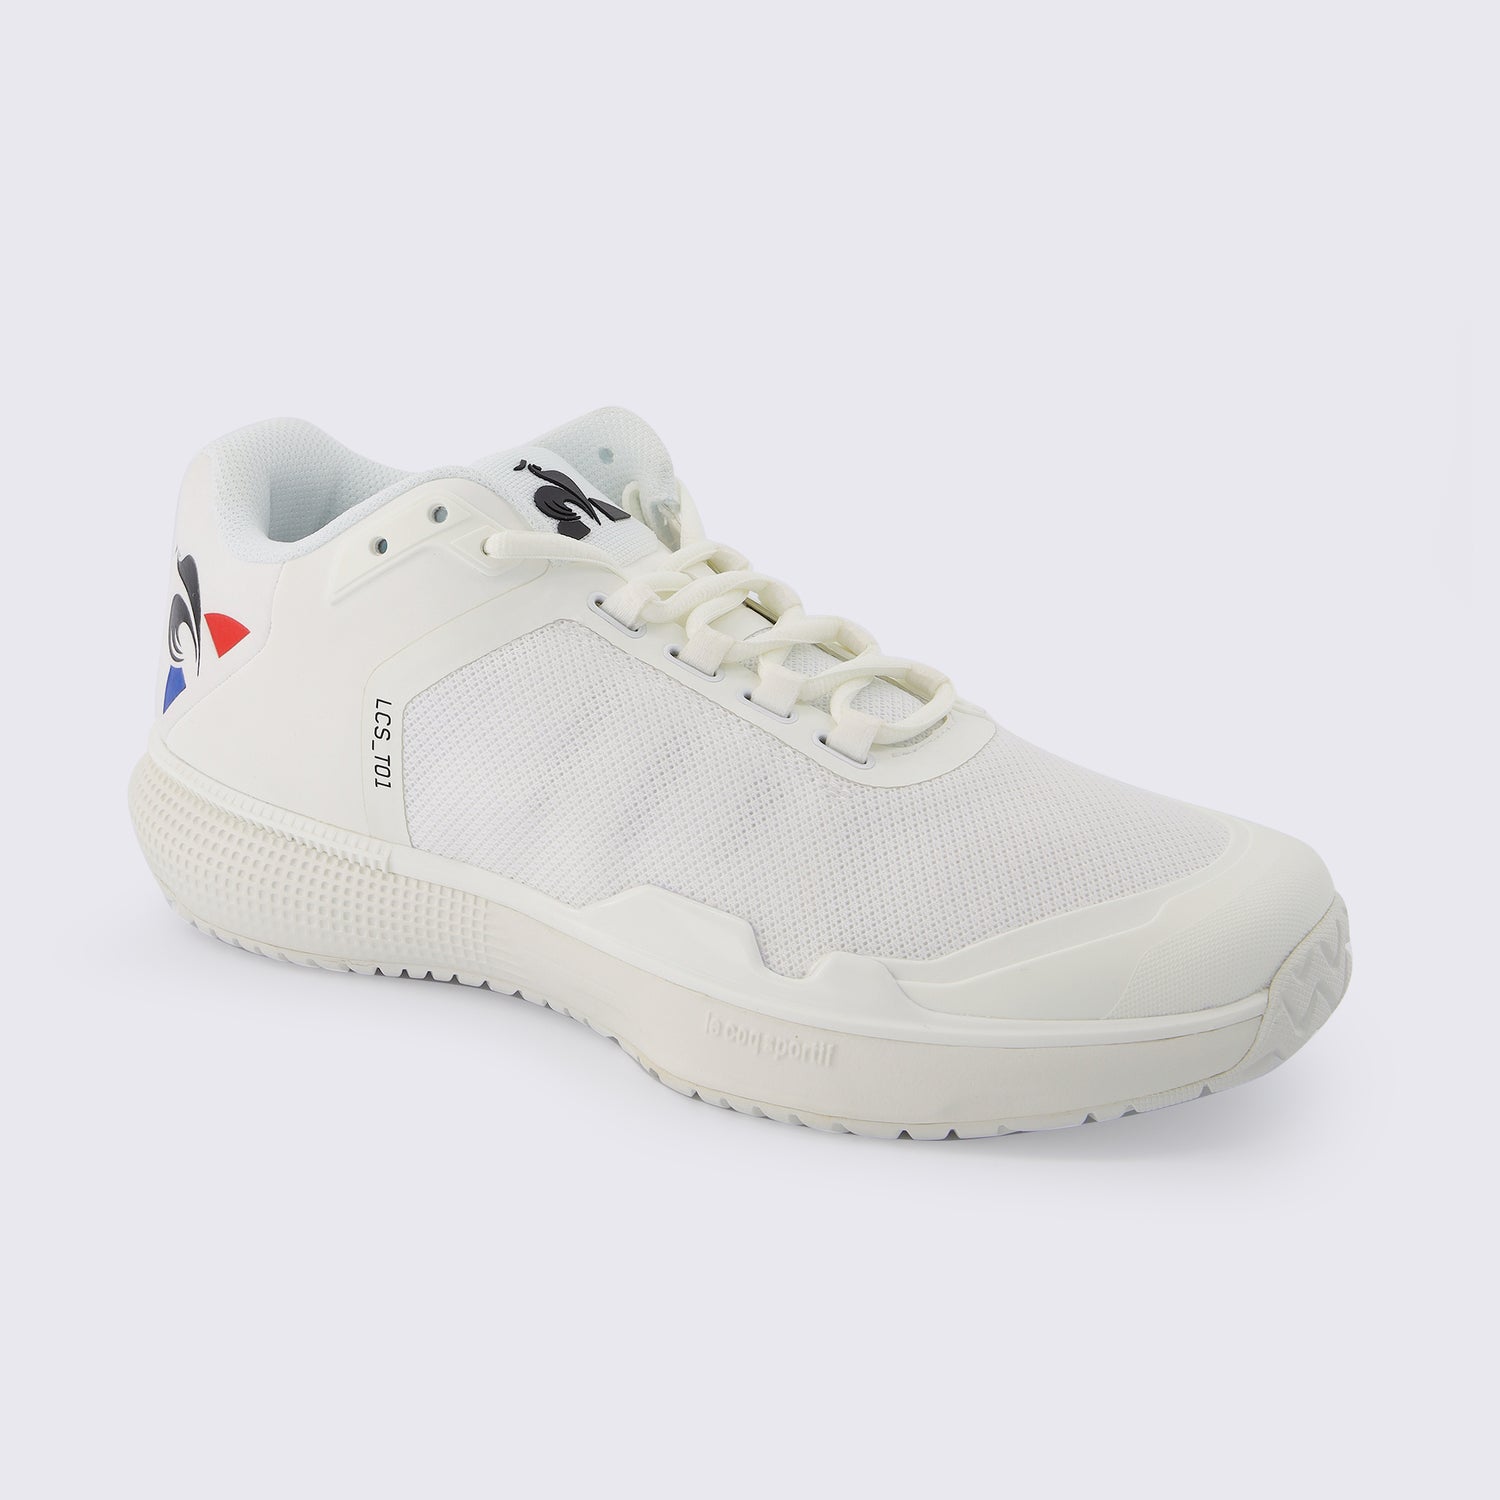 2210976-FUTUR LCS T01 ALL COURT bright white  | Zapatos de tennis FUTUR LCS T01 ALL COURT Unisex